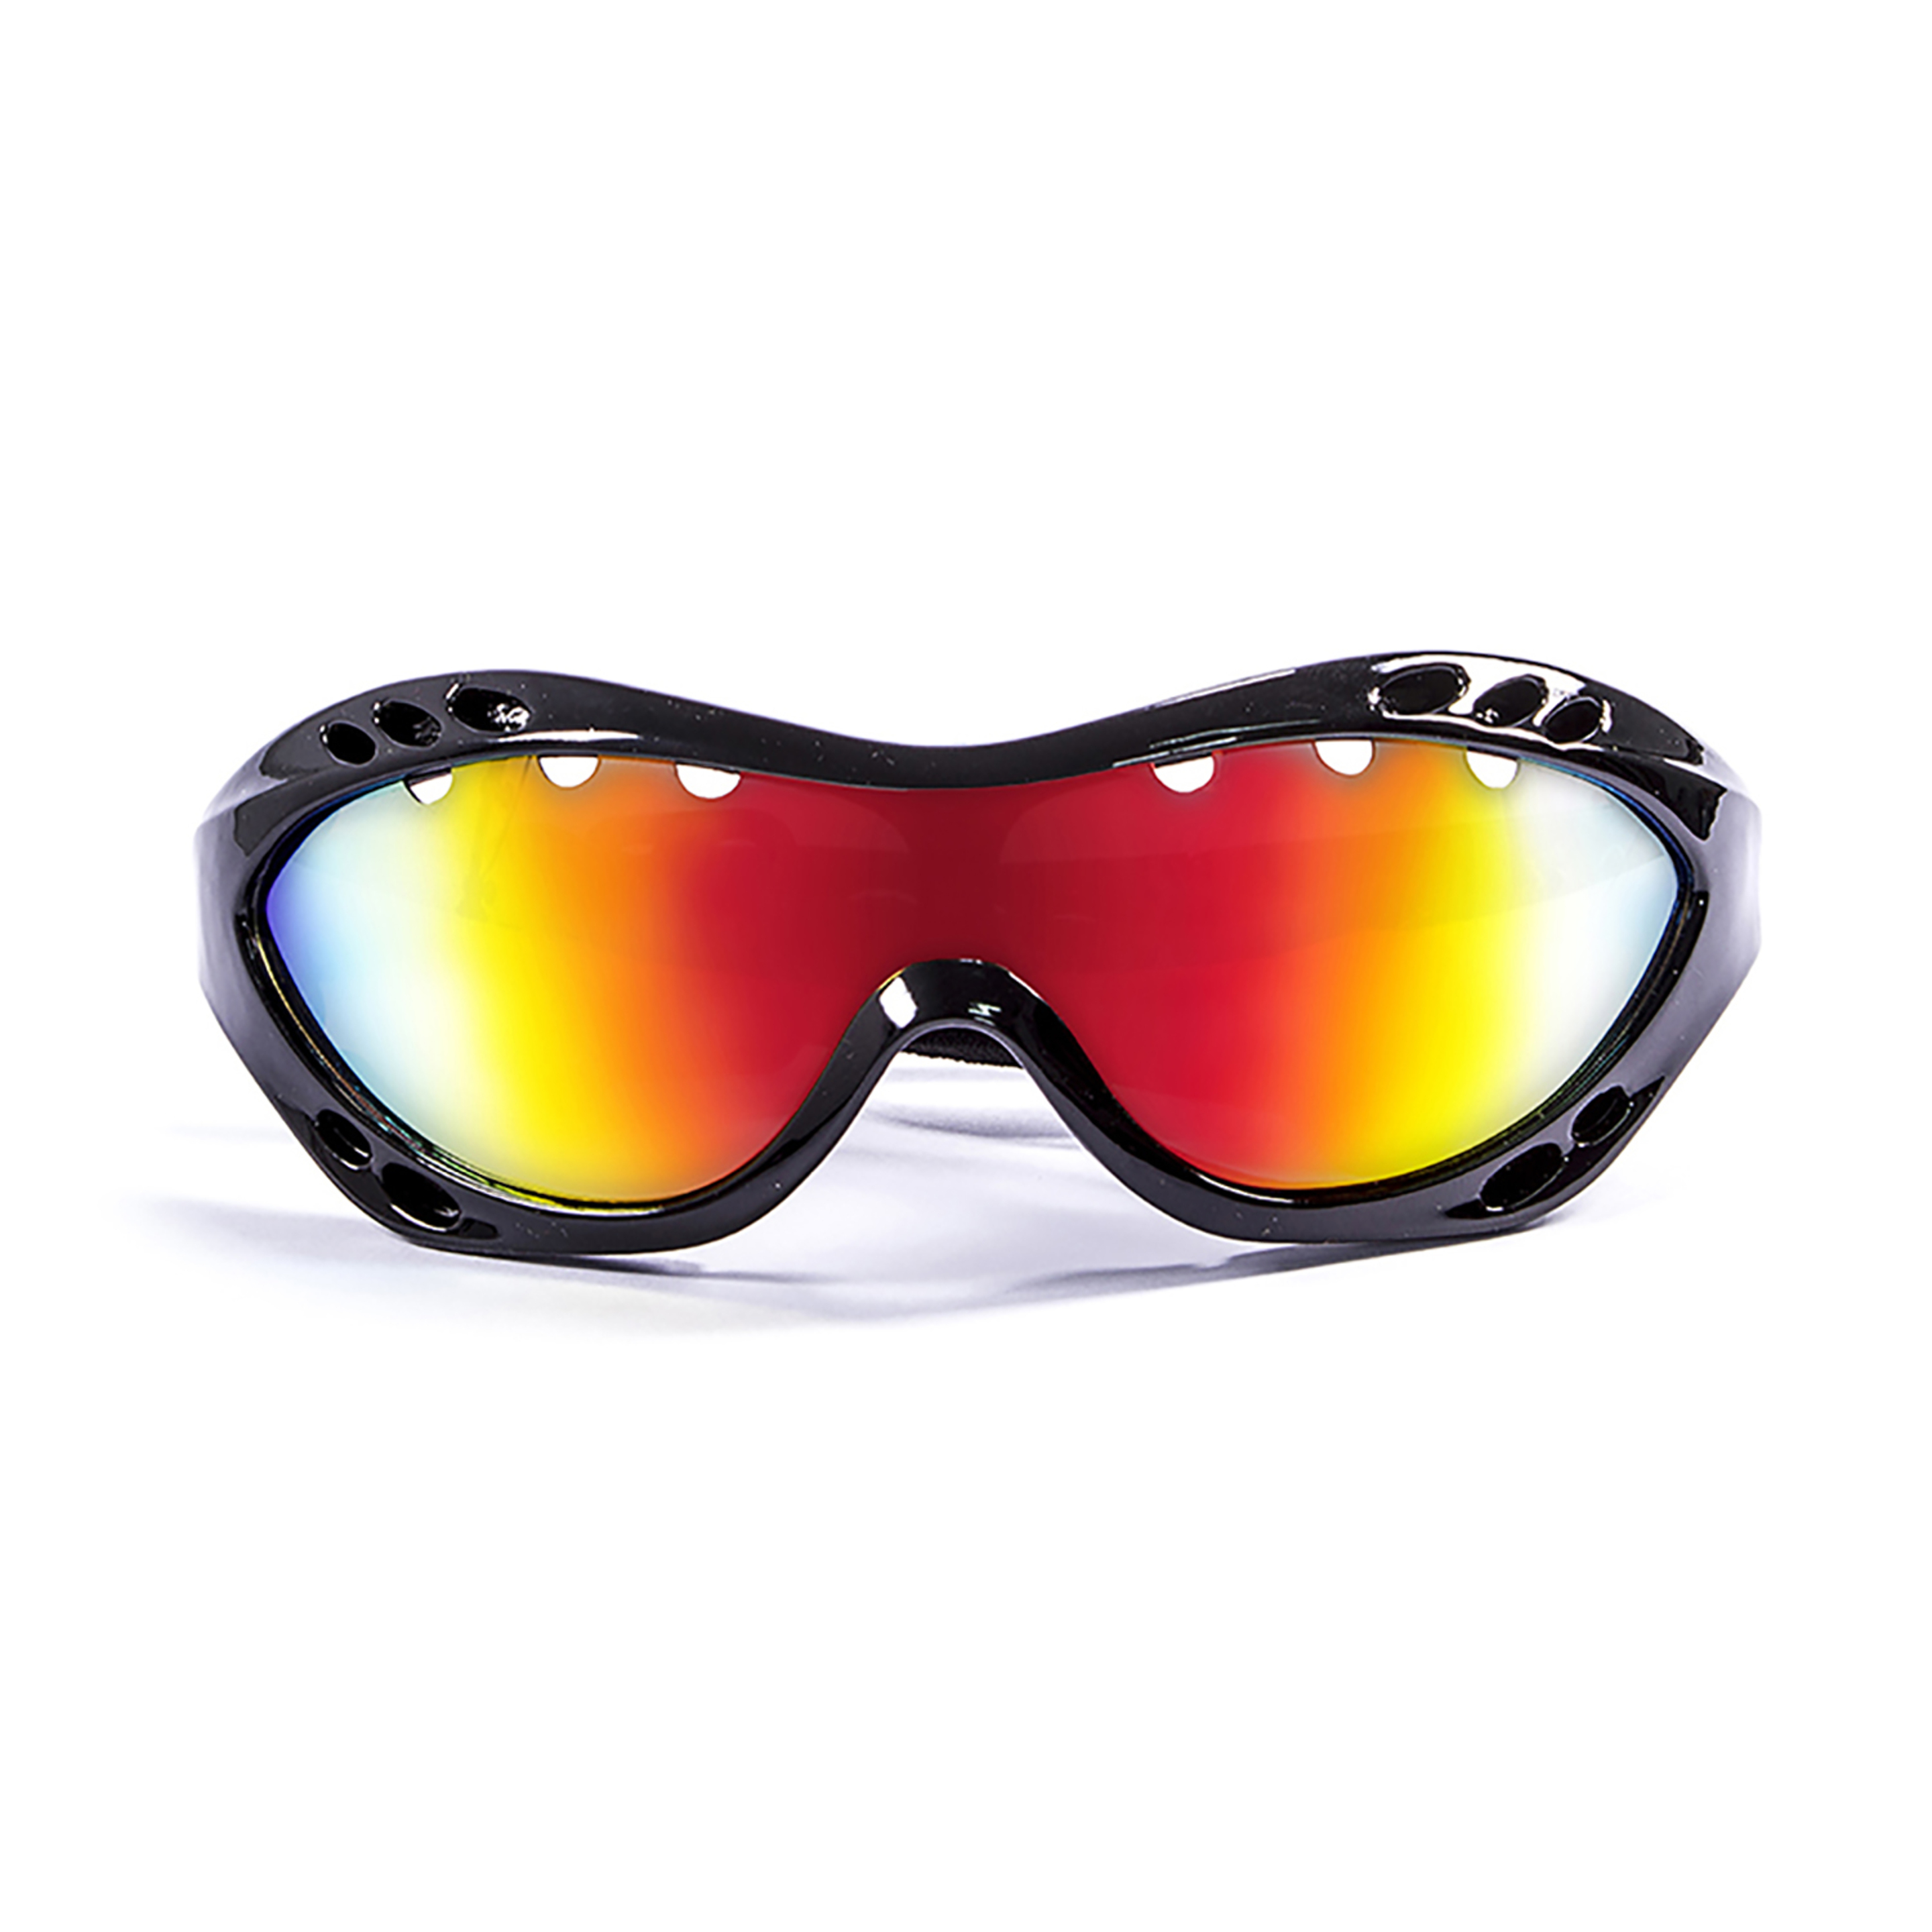 Gafas De Sol Técnicas Para La Práctica De Deportes De Agua  Costa Rica Ocean Sunglasses - naranja-negro - 